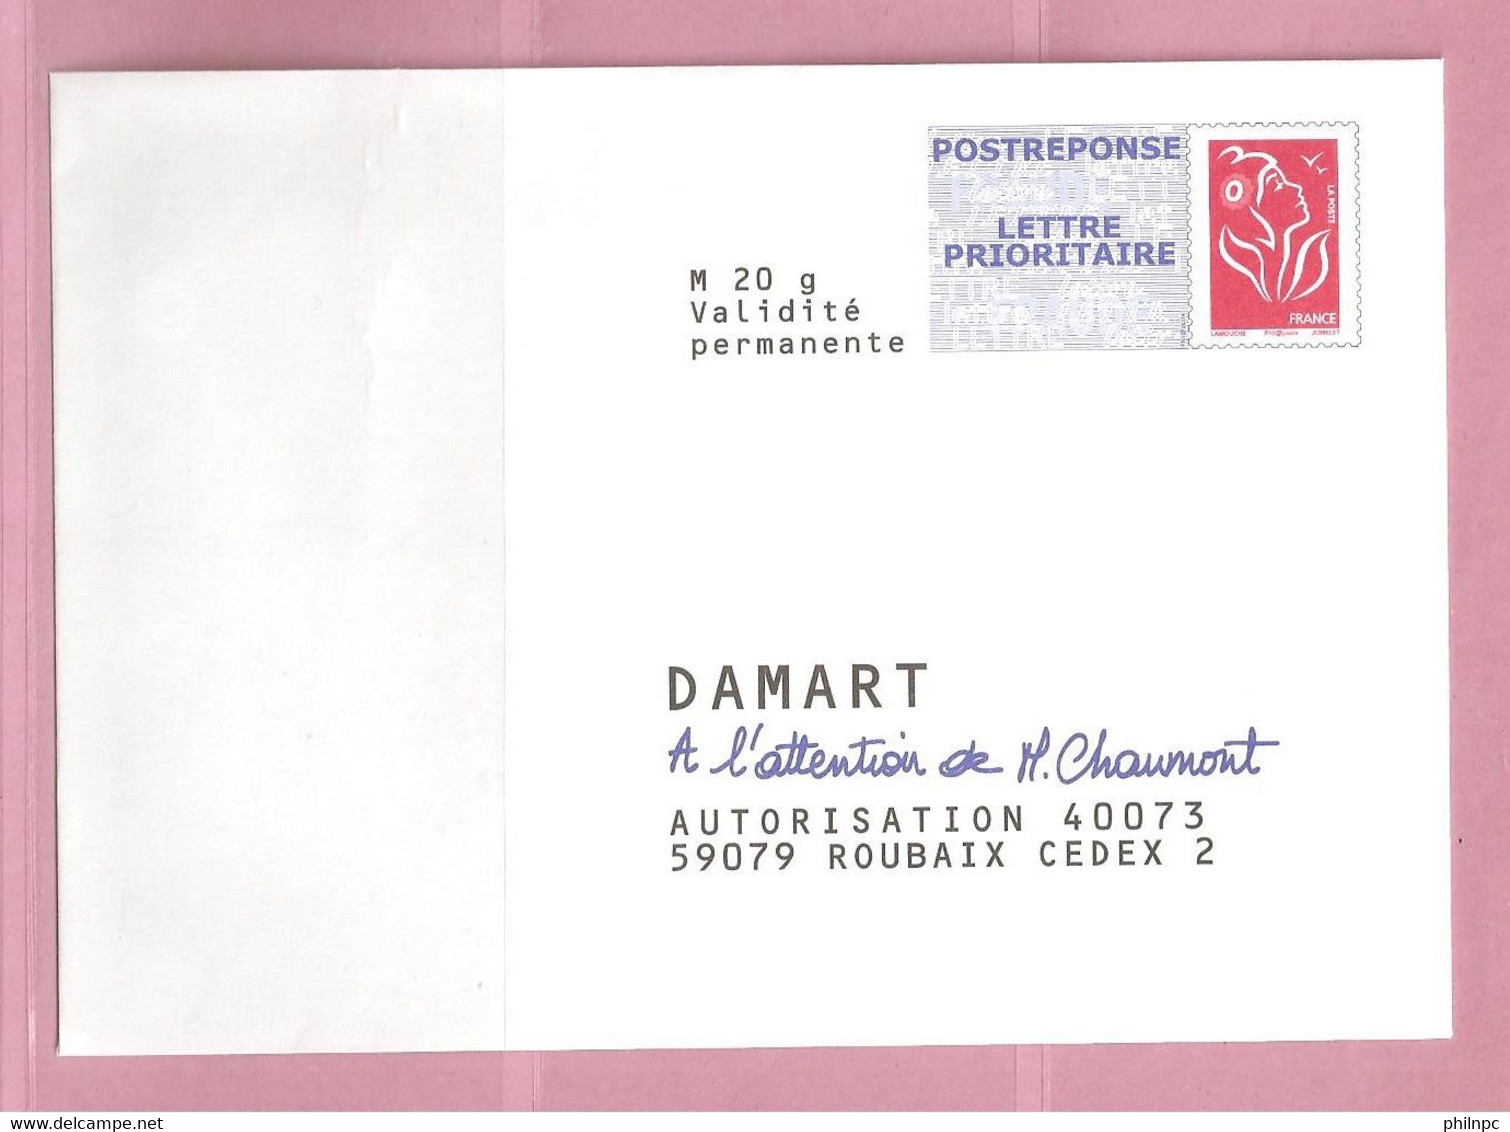 France, Prêt à Poster Réponse, 3734A, Postréponse, Damart, Marianne De Lamouche - Prêts-à-poster: Réponse /Lamouche